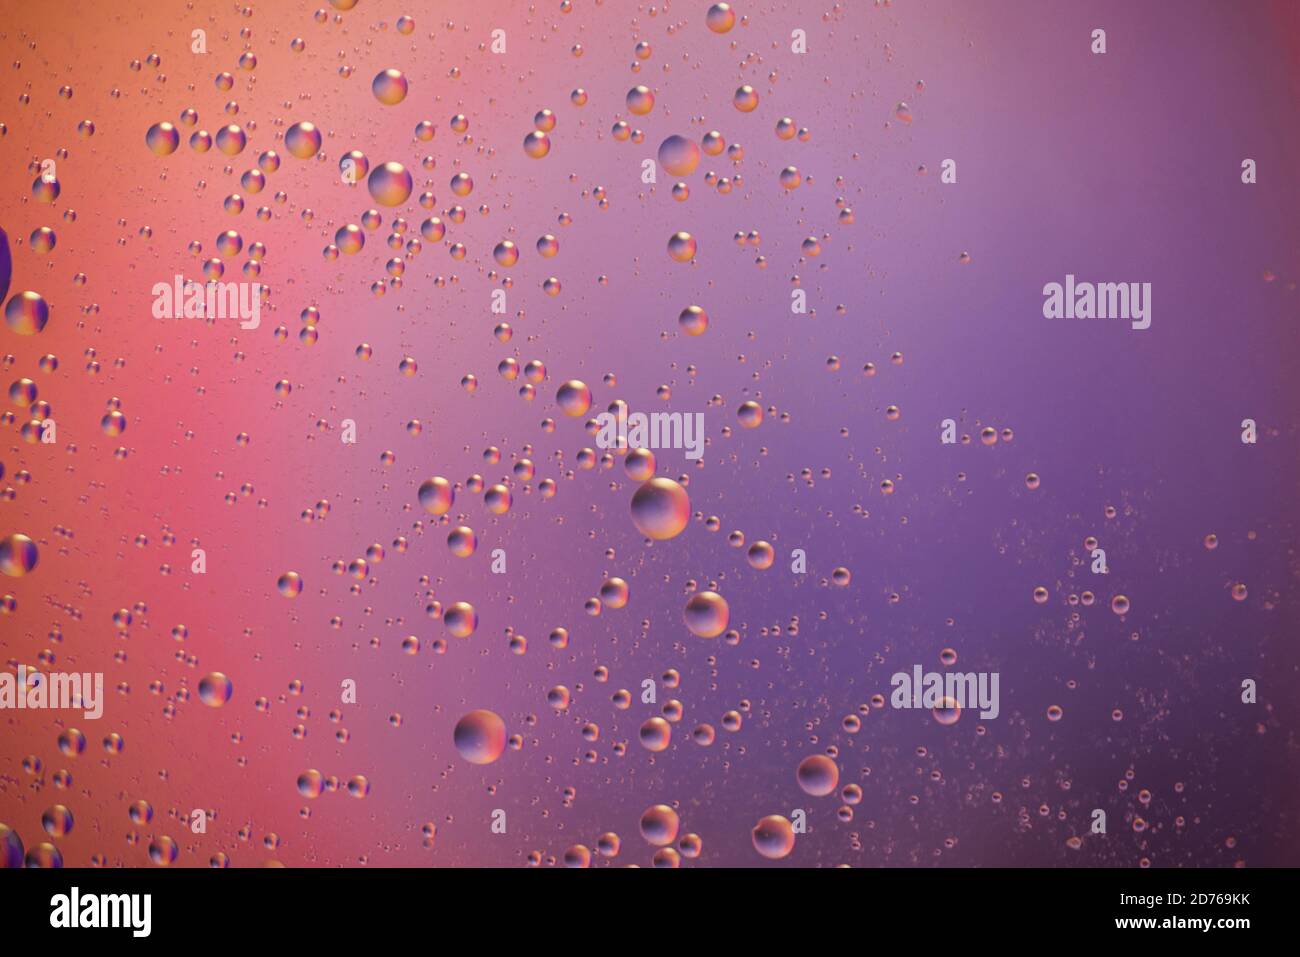 belle gocce di olio galleggiano caoticamente sull'acqua, colore di sfondo lilla, rosa, viola, blu. adatto per screensaver desktop di vari gadget Foto Stock